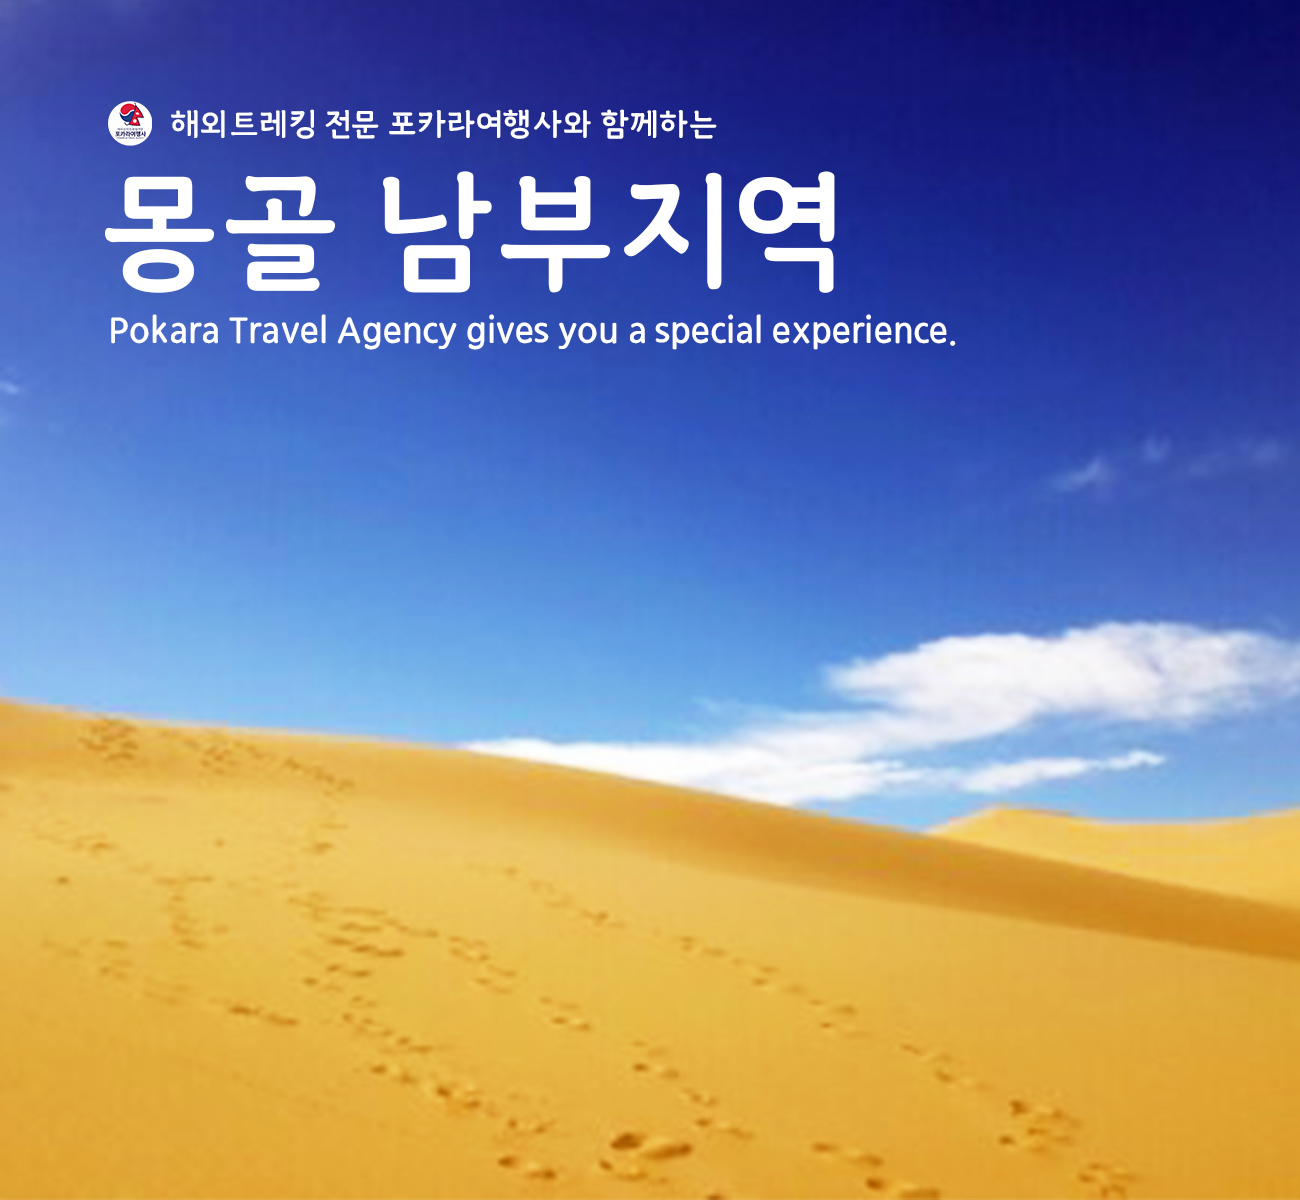 [소그룹/단체] 몽골 테를지&남부지역 8일